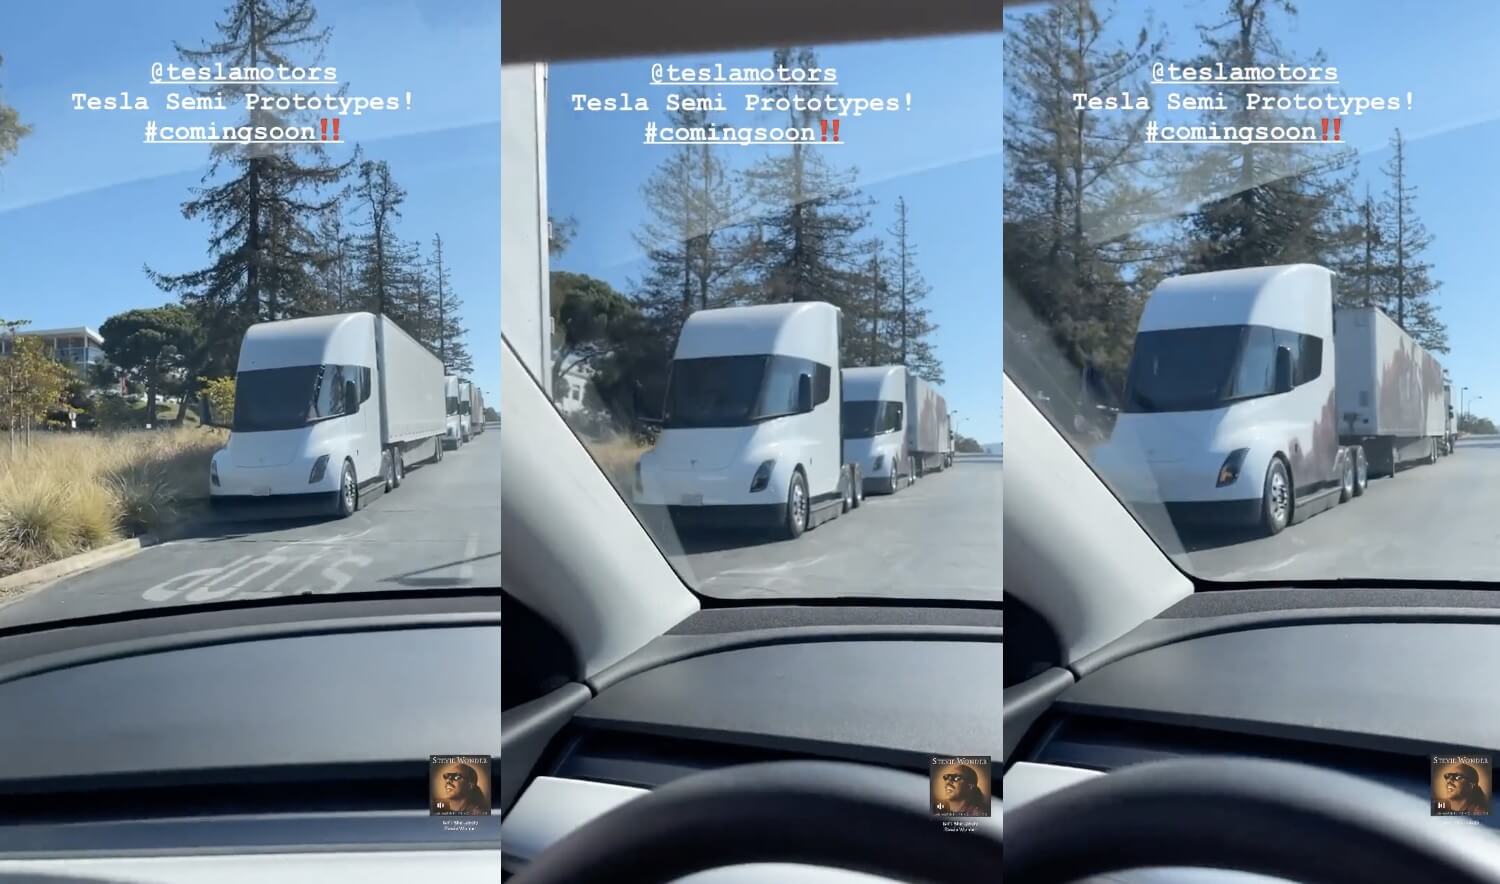 Gli avvistamenti di Tesla Semi stanno diventando più comuni